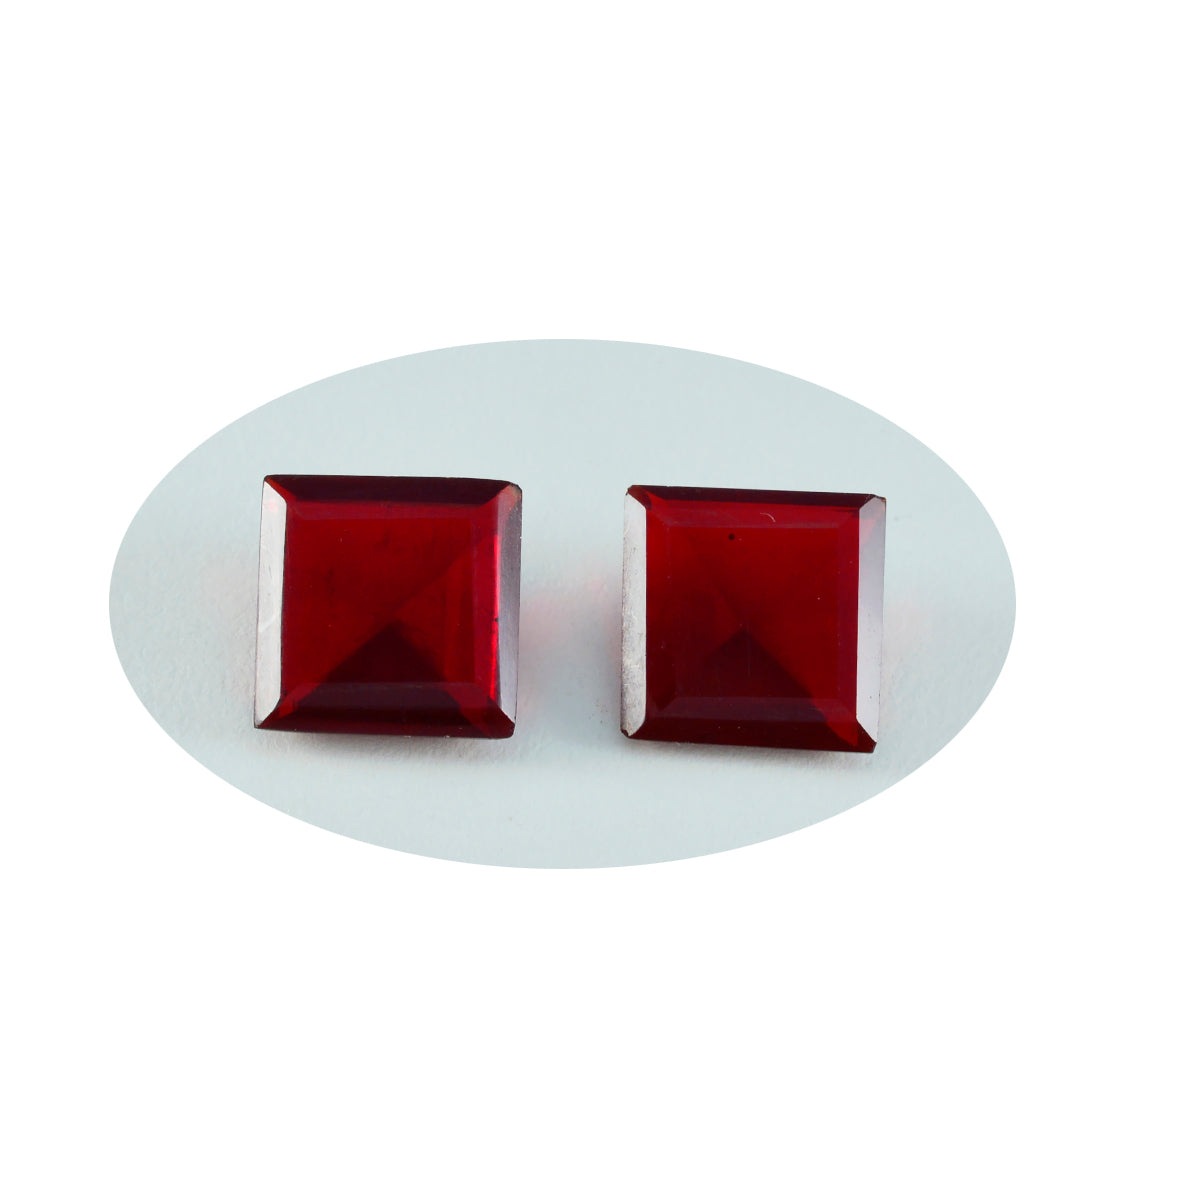 Riyogems 1pc rubis rouge cz facettes 13x13mm forme carrée beauté qualité gemme